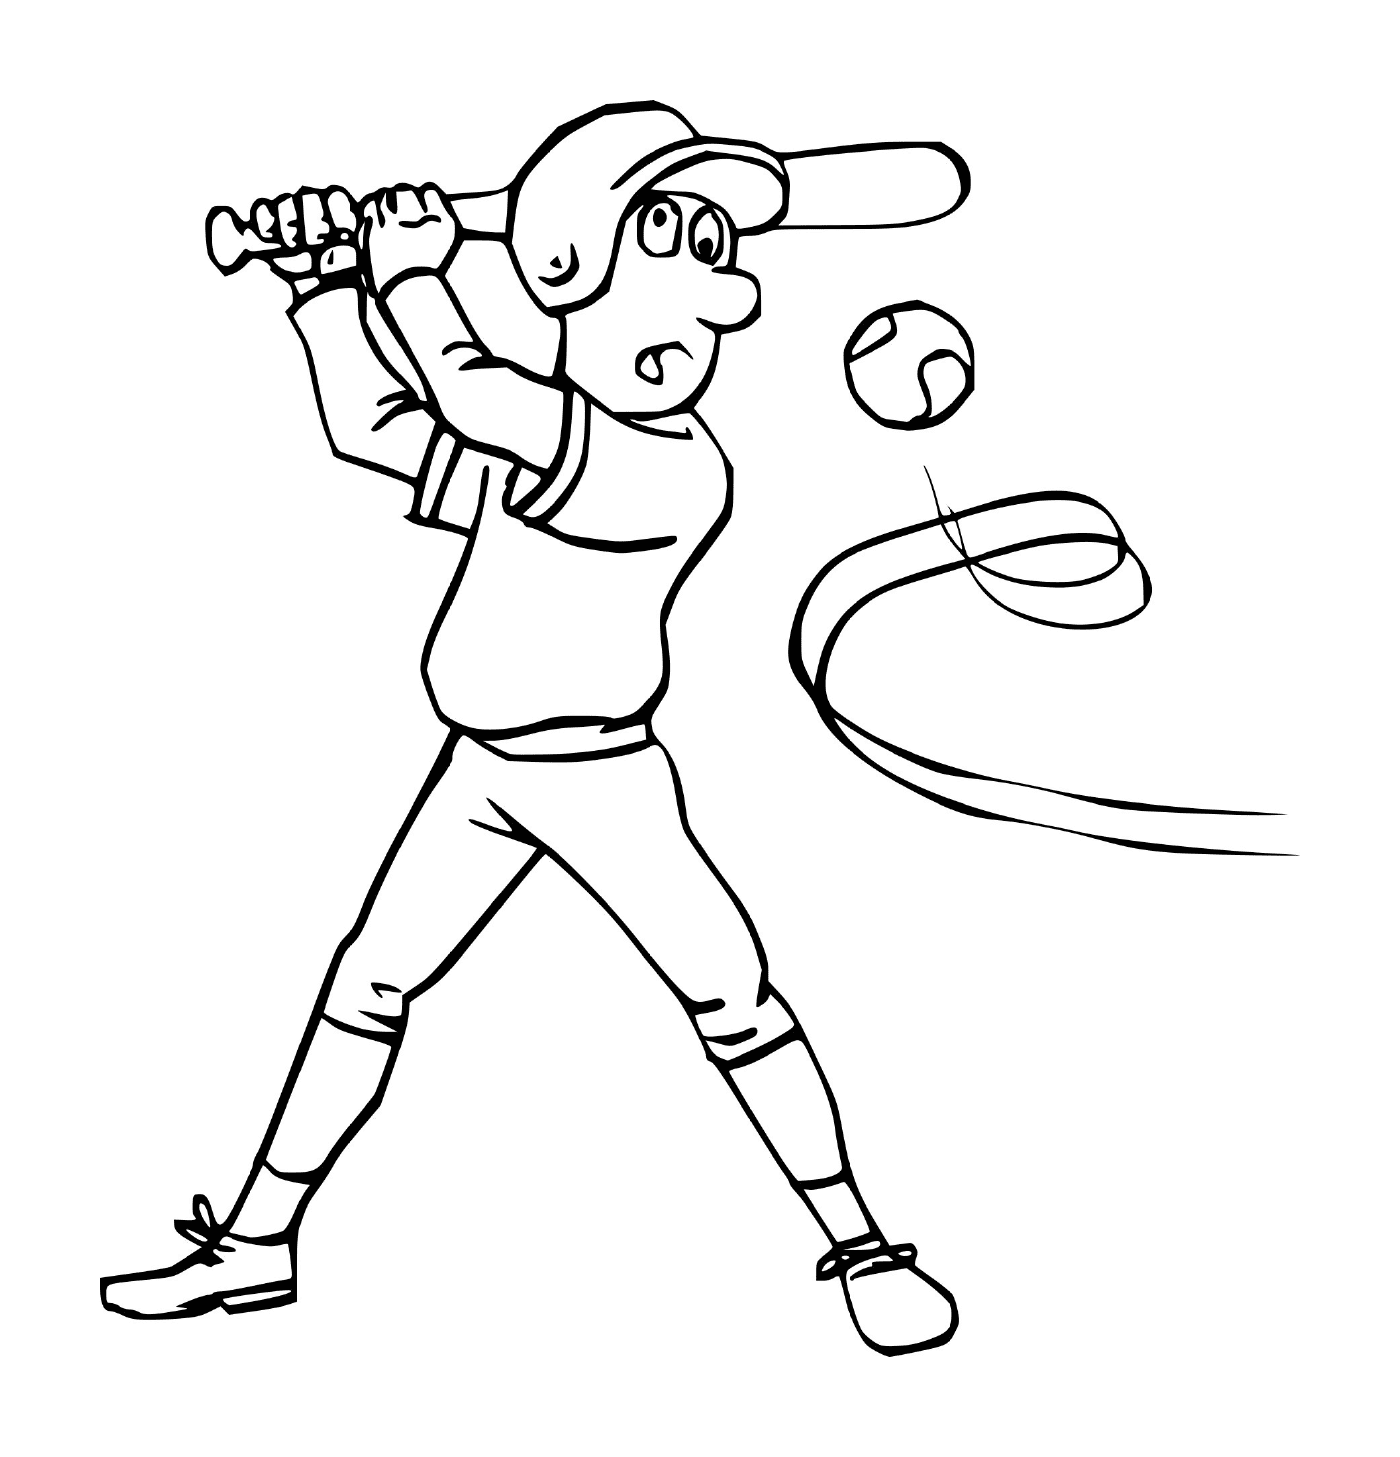  Sport, baseball, uomo che colpisce una palla 